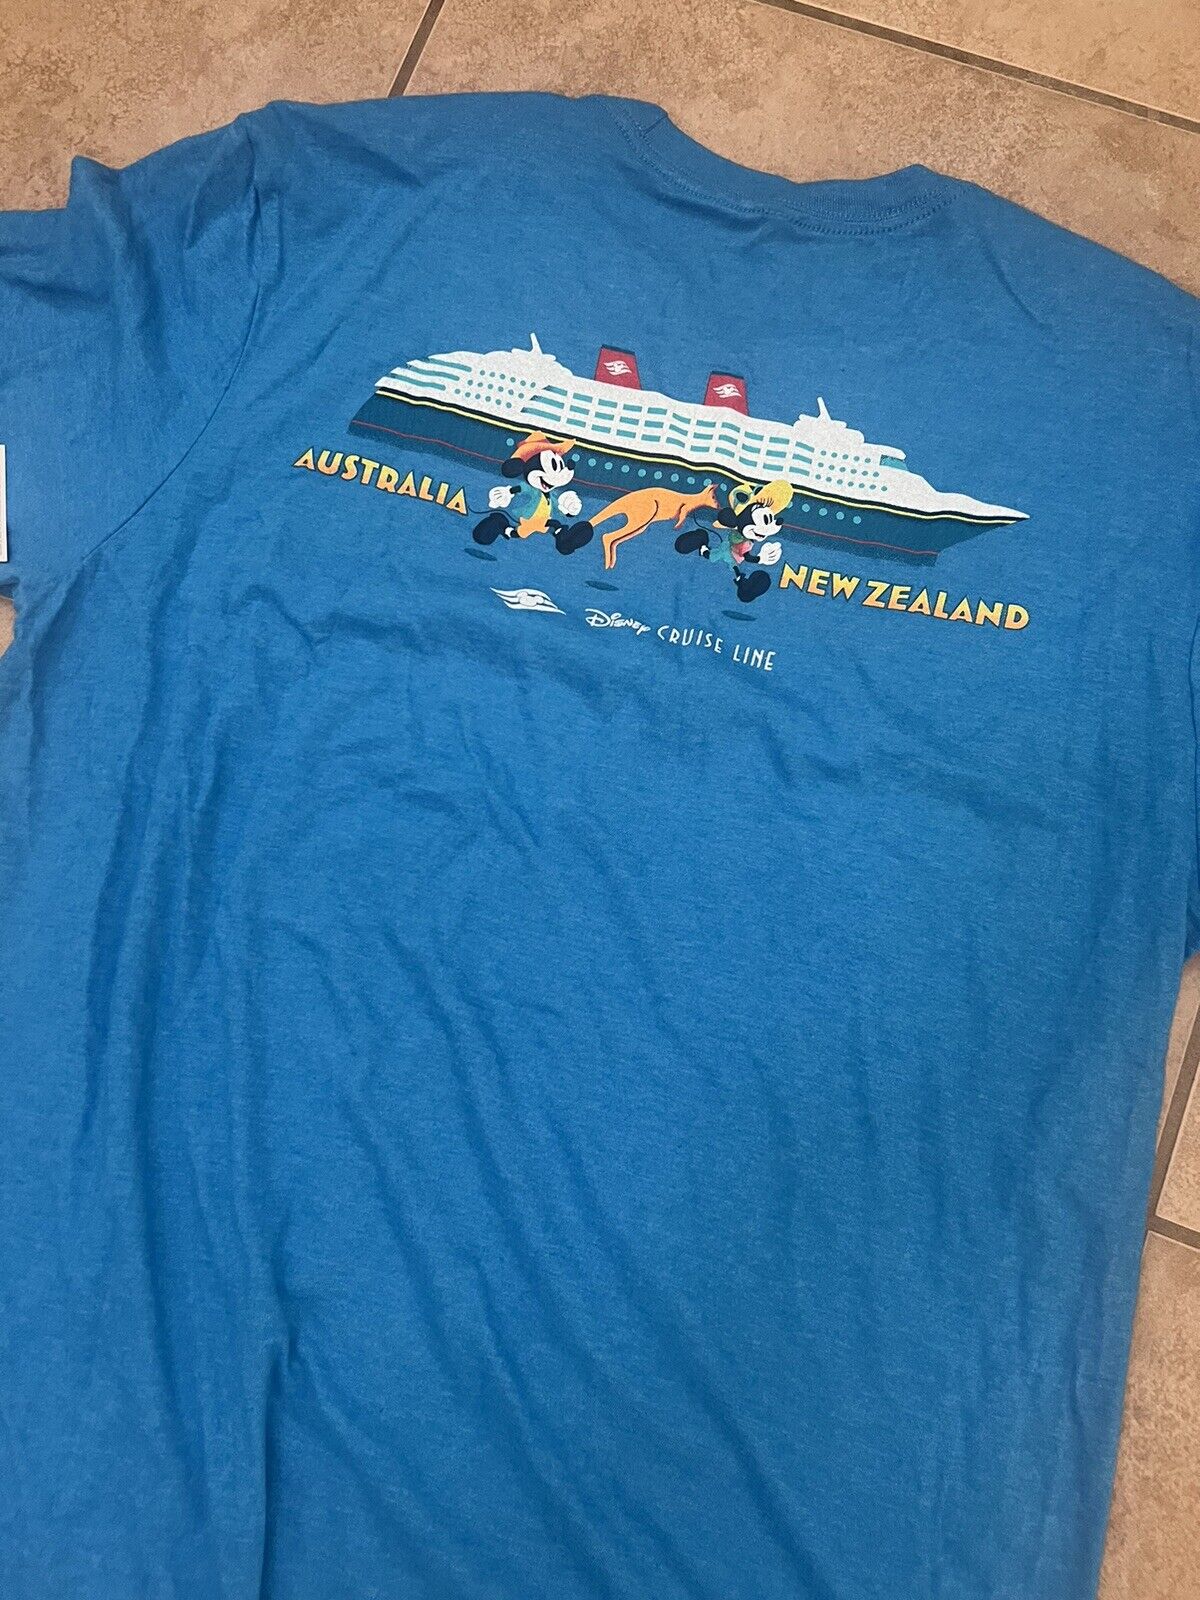 Disney Cruise Line Wonder DCL Shirt Australia New Zealand Adult Size XLarge NWT